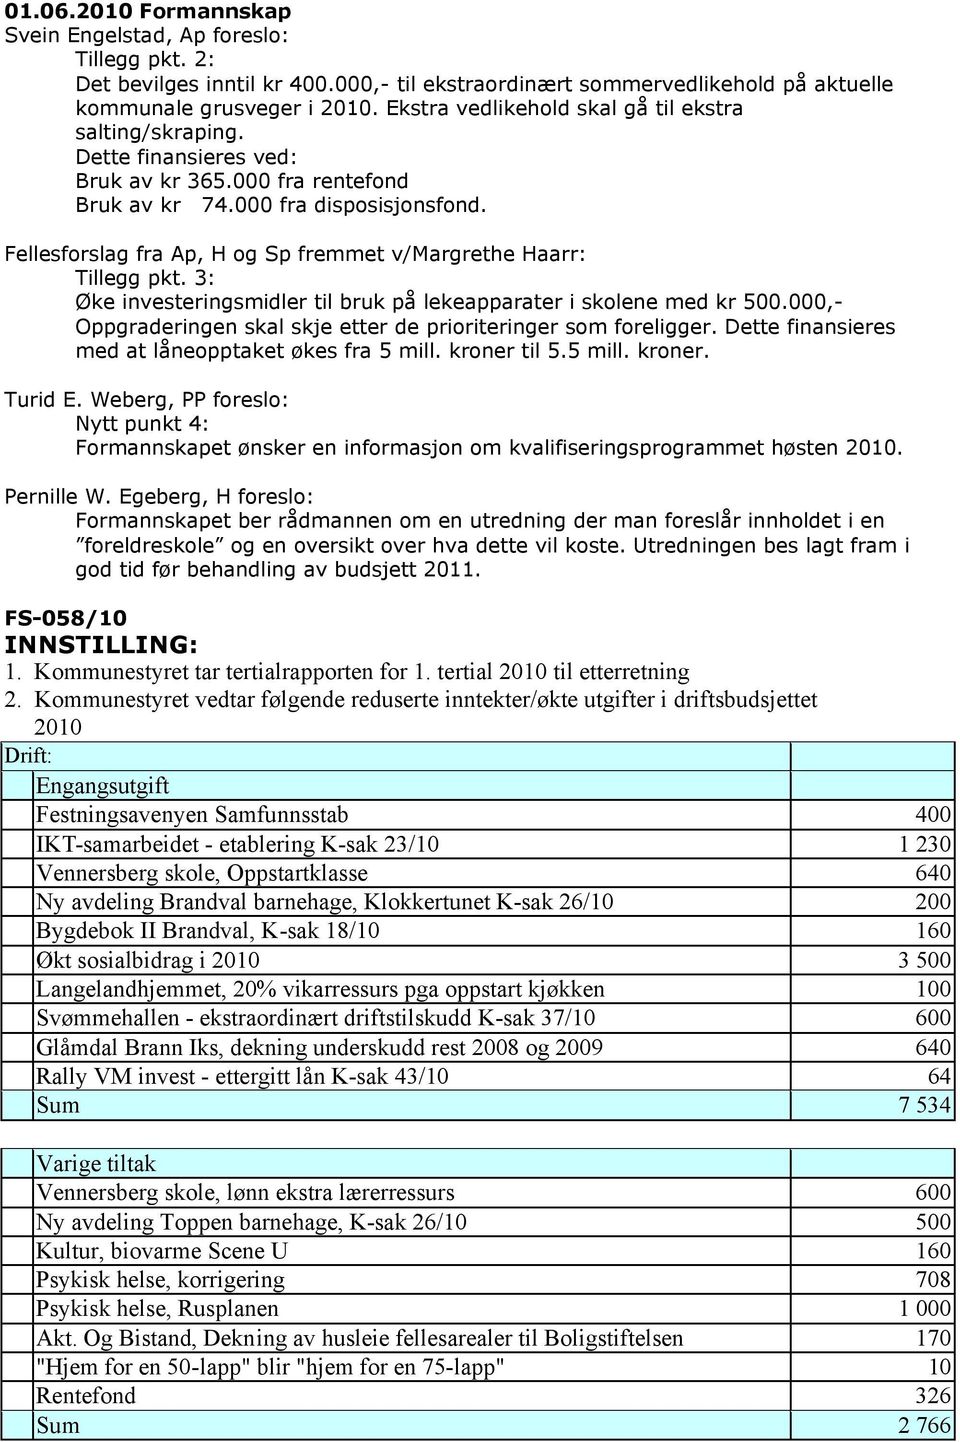 Fellesforslag fra Ap, H og Sp fremmet v/margrethe Haarr: Tillegg pkt. 3: Øke investeringsmidler til bruk på lekeapparater i skolene med kr 500.